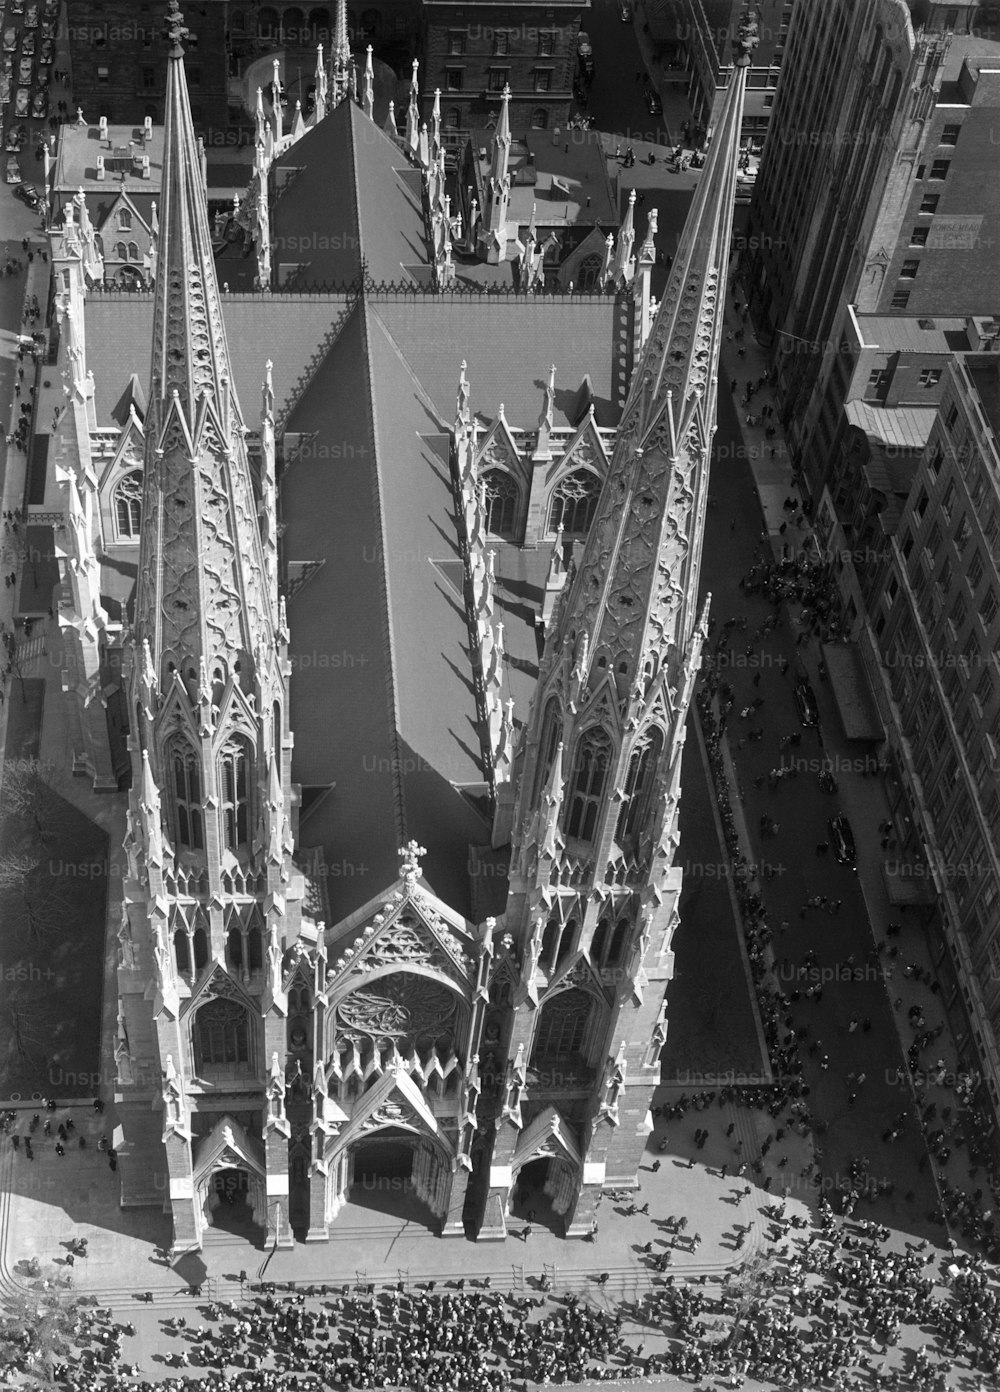 Vereinigte Staaten - circa 1950er Jahre: New York City, St. Patrick's Cathedral.